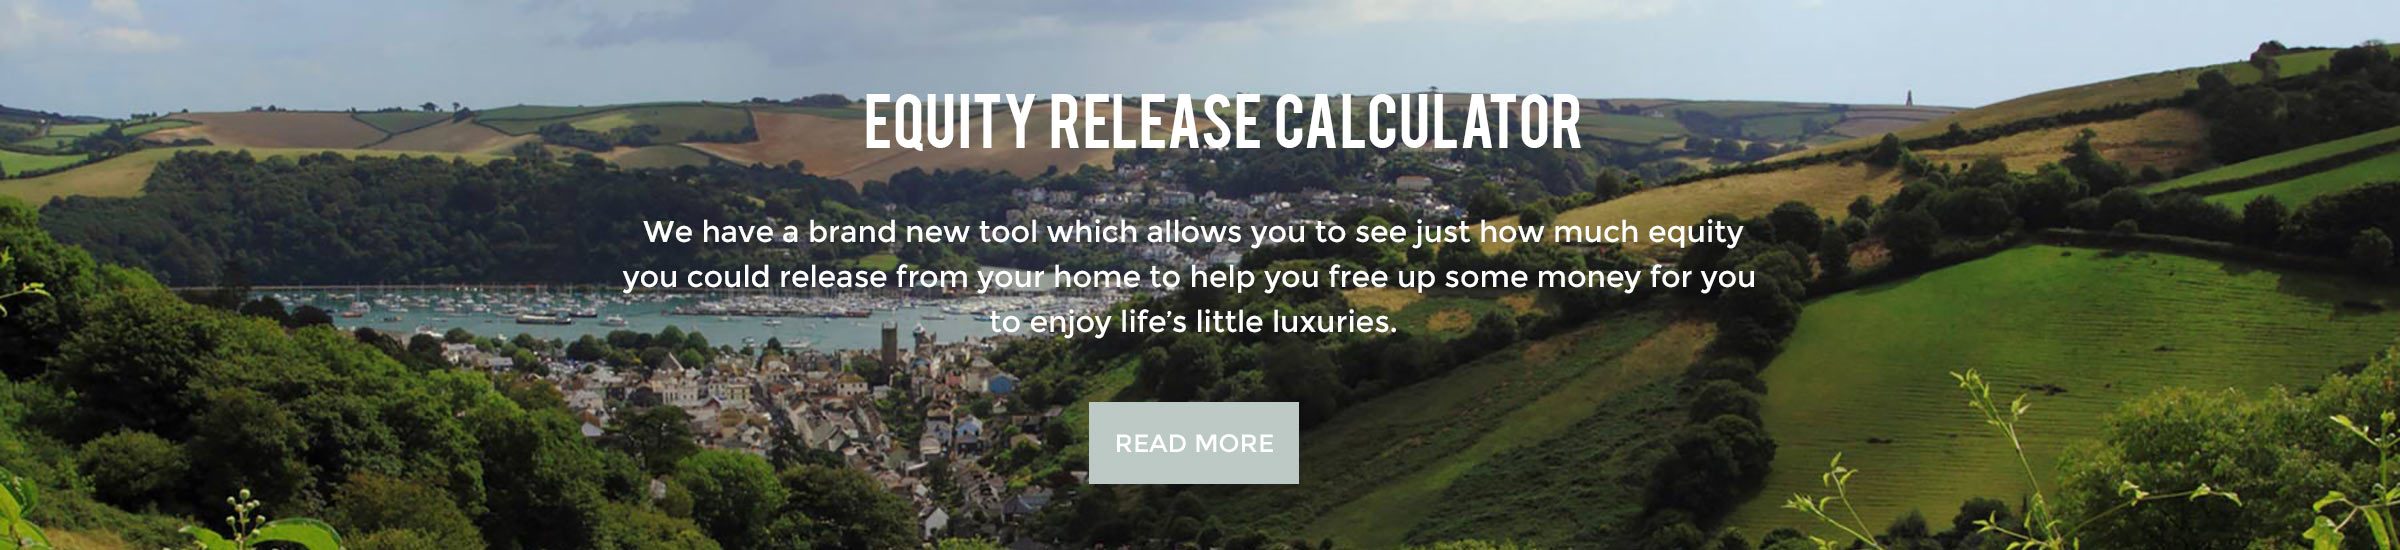 equity release calculator